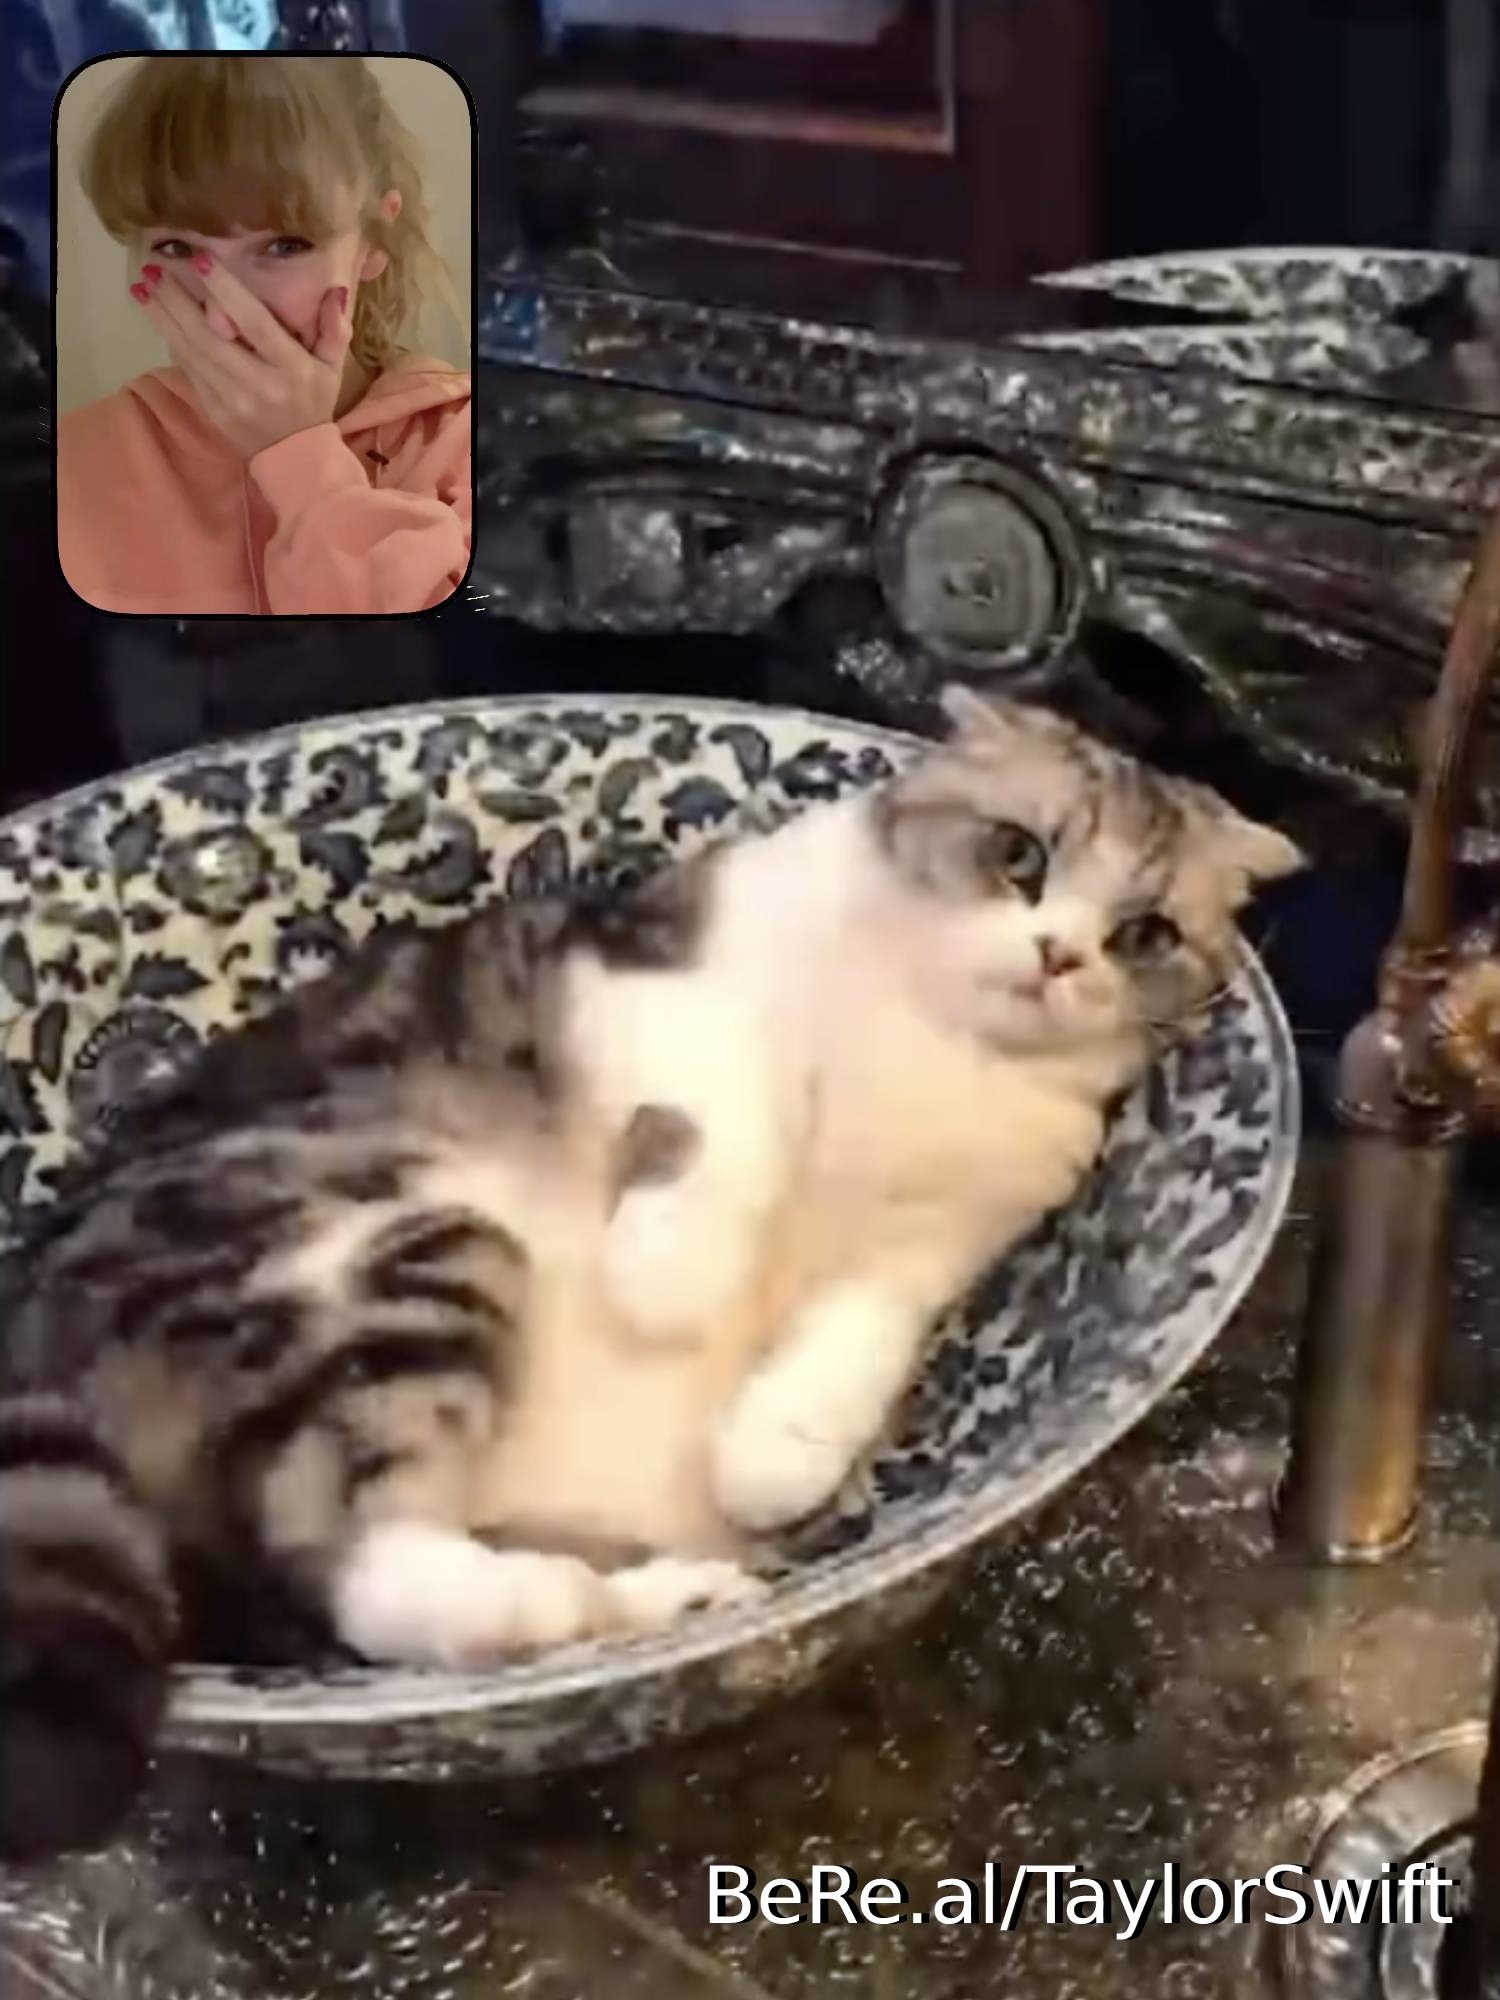 Taylor Swift, a cat lying in a sink